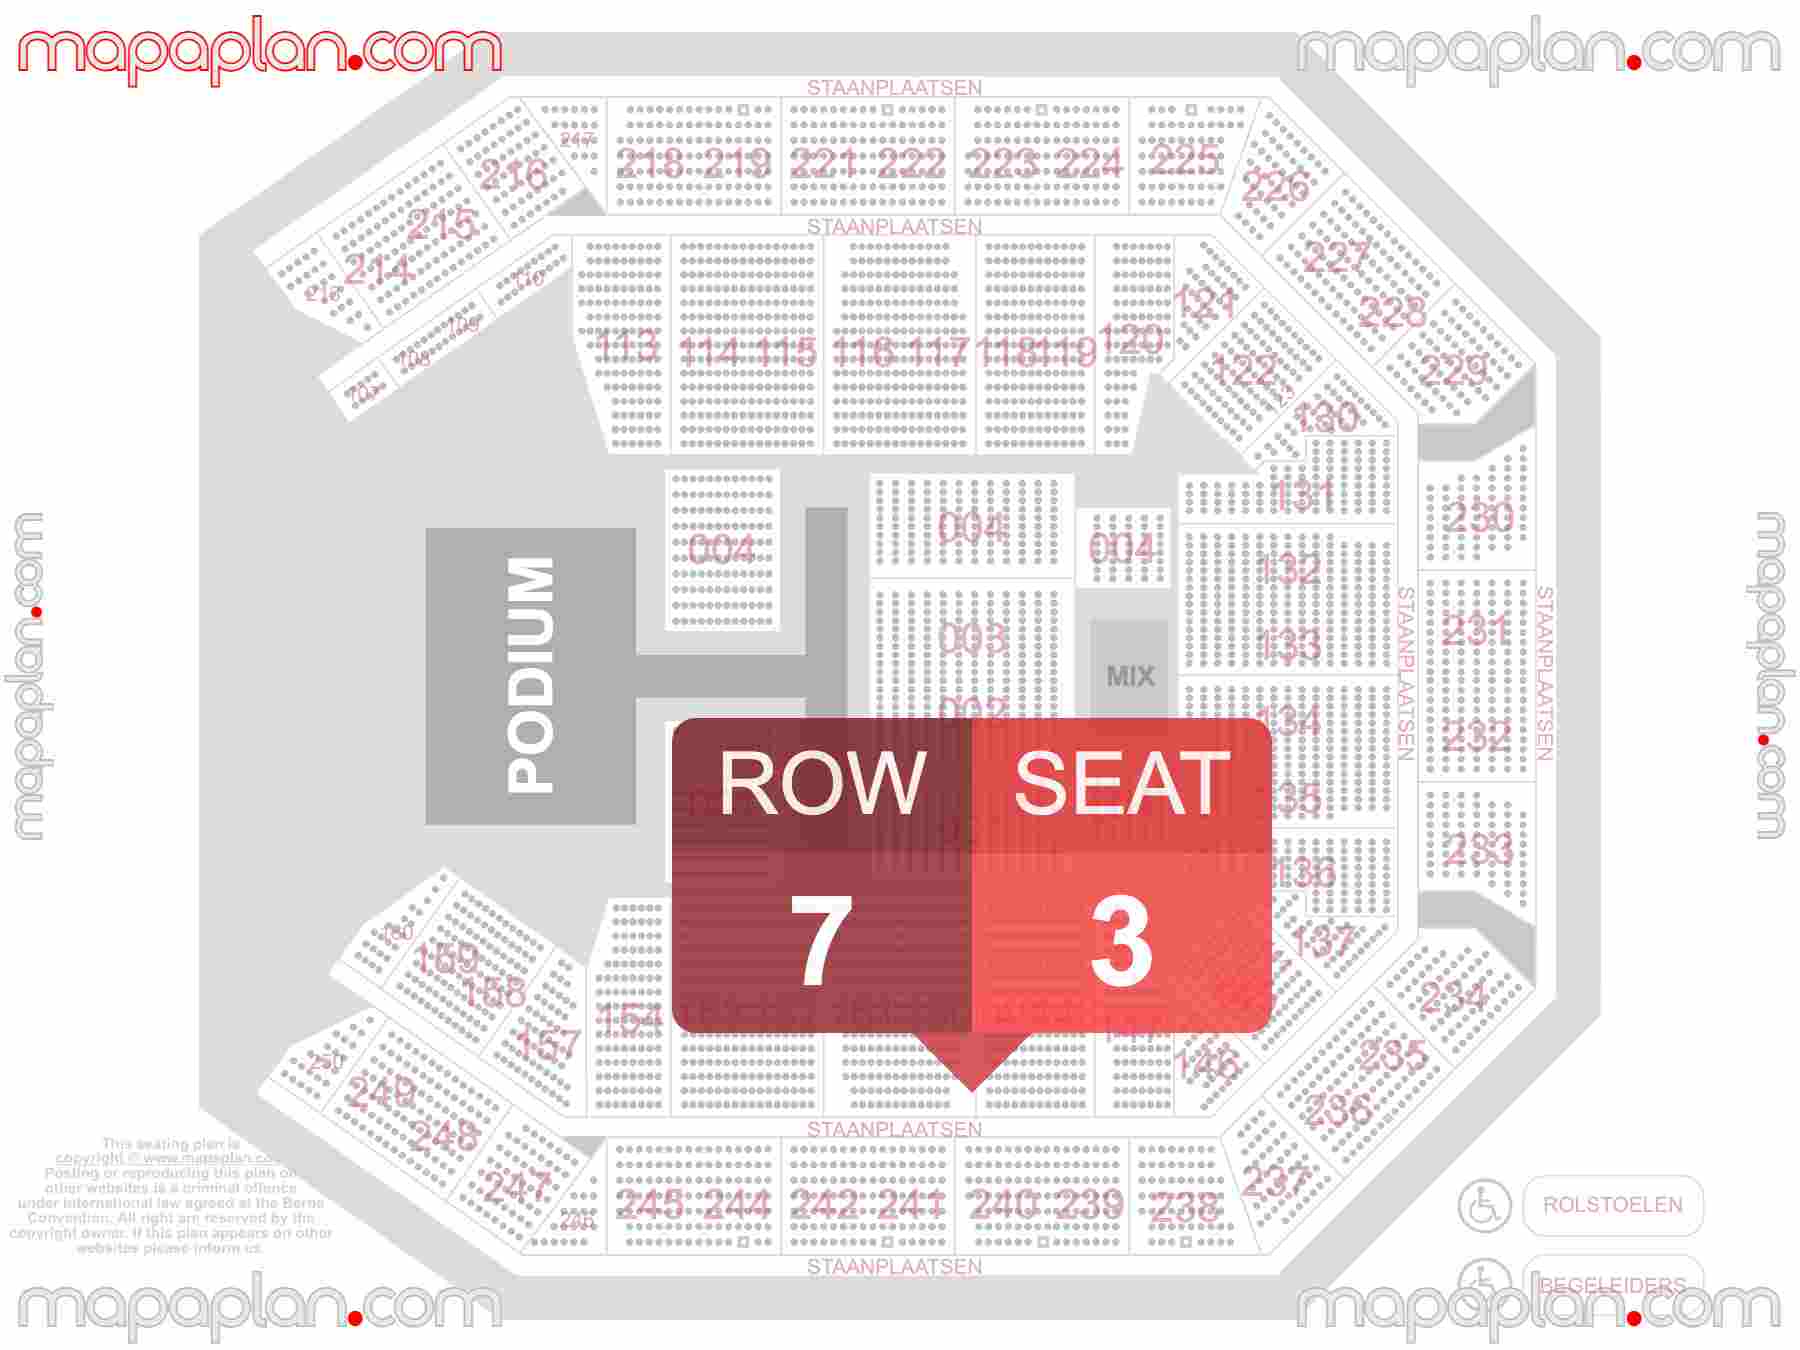 Antwerpen Lotto Arena seating plan Concerts plattegrond met zitplaatsen nummering en rijnummers zaalplan indeling met stoelnummers - find best seats row numbering system map showing how many seats per row - Individual find my seat virtual locator